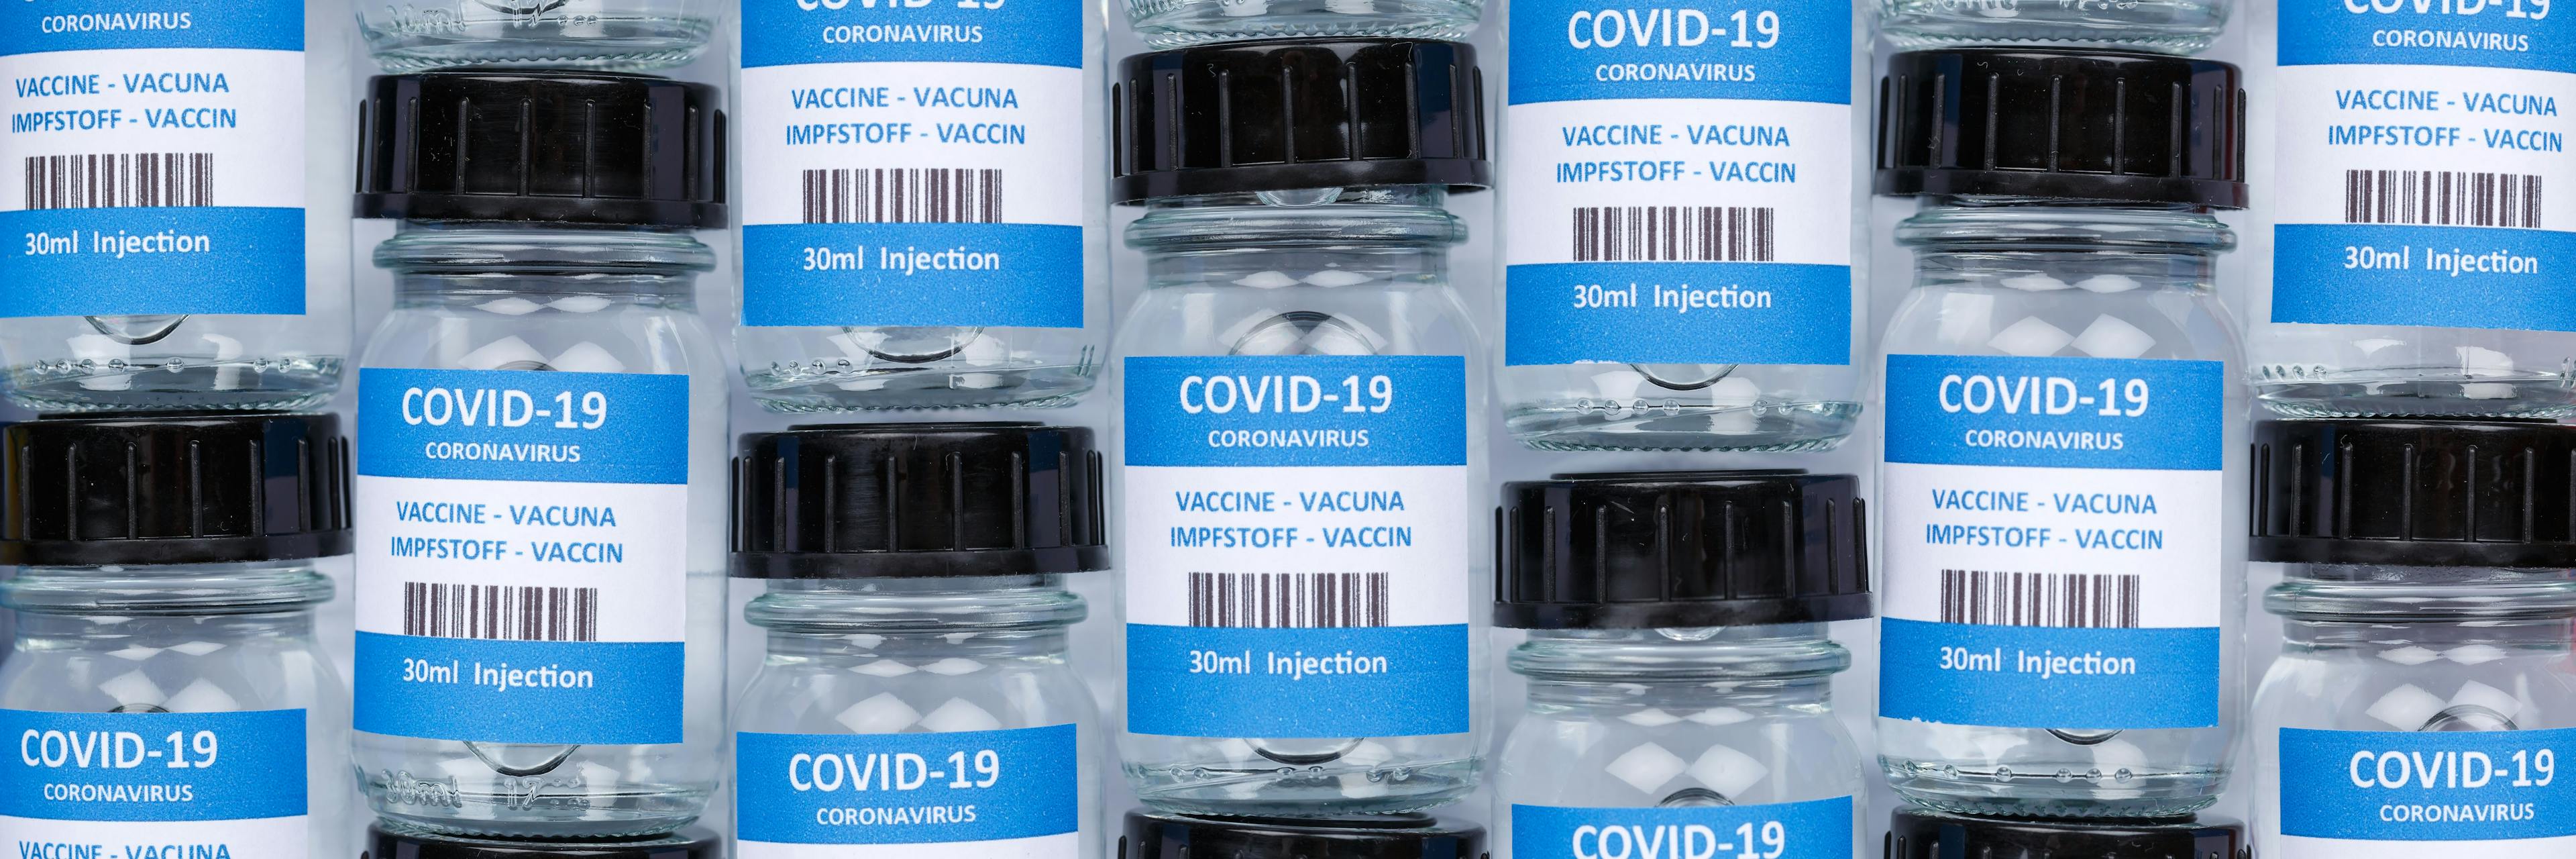 FDA grants Johnson & Johnson COVID-19 vaccine EUA